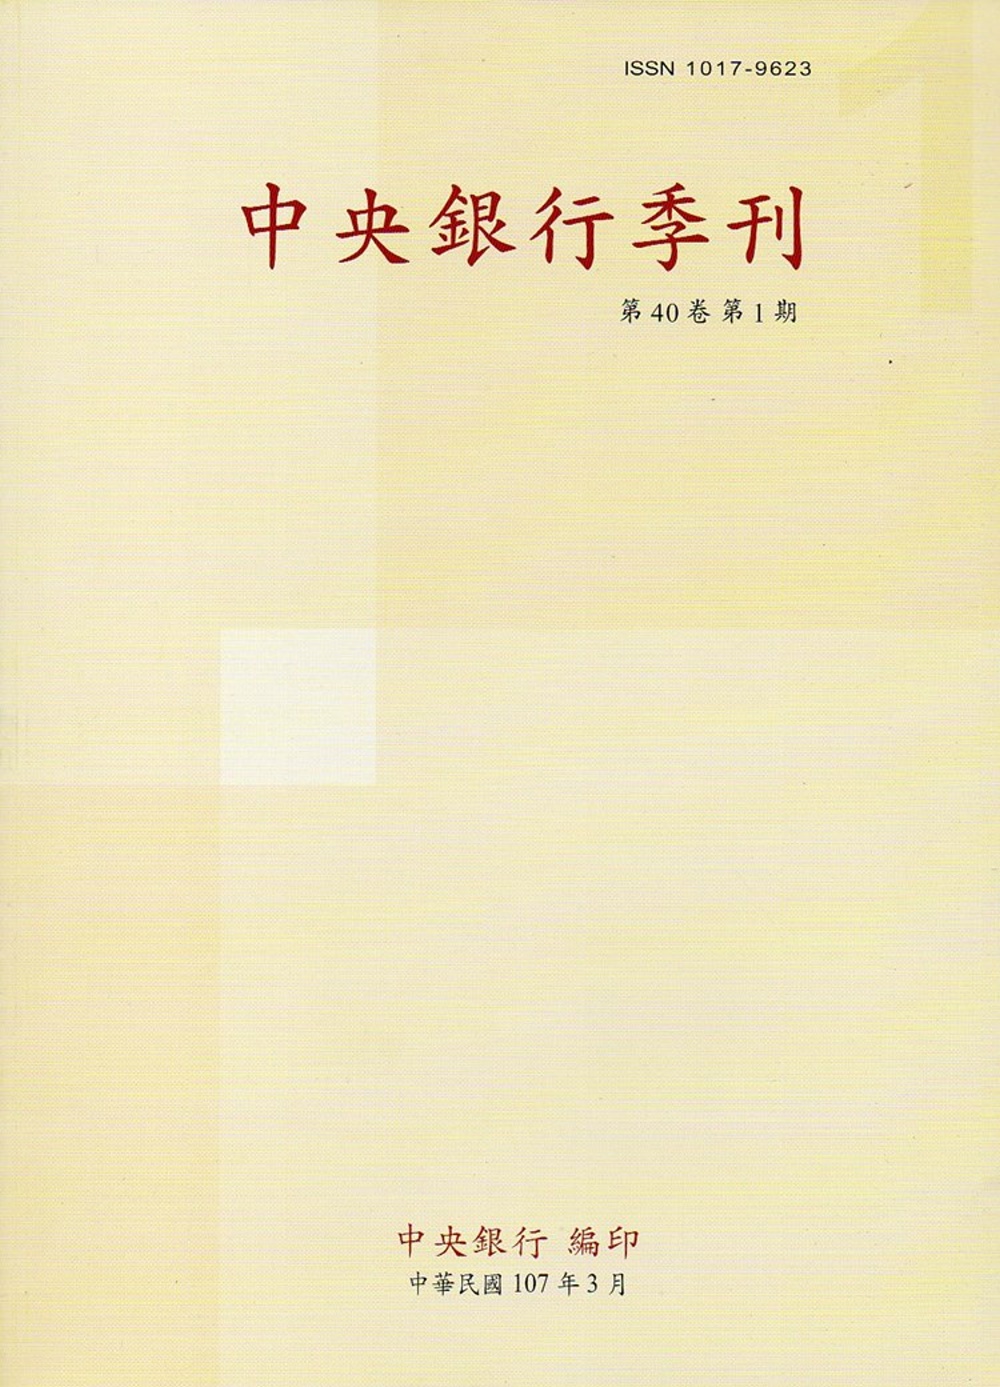 中央銀行季刊40卷1期（107.03）